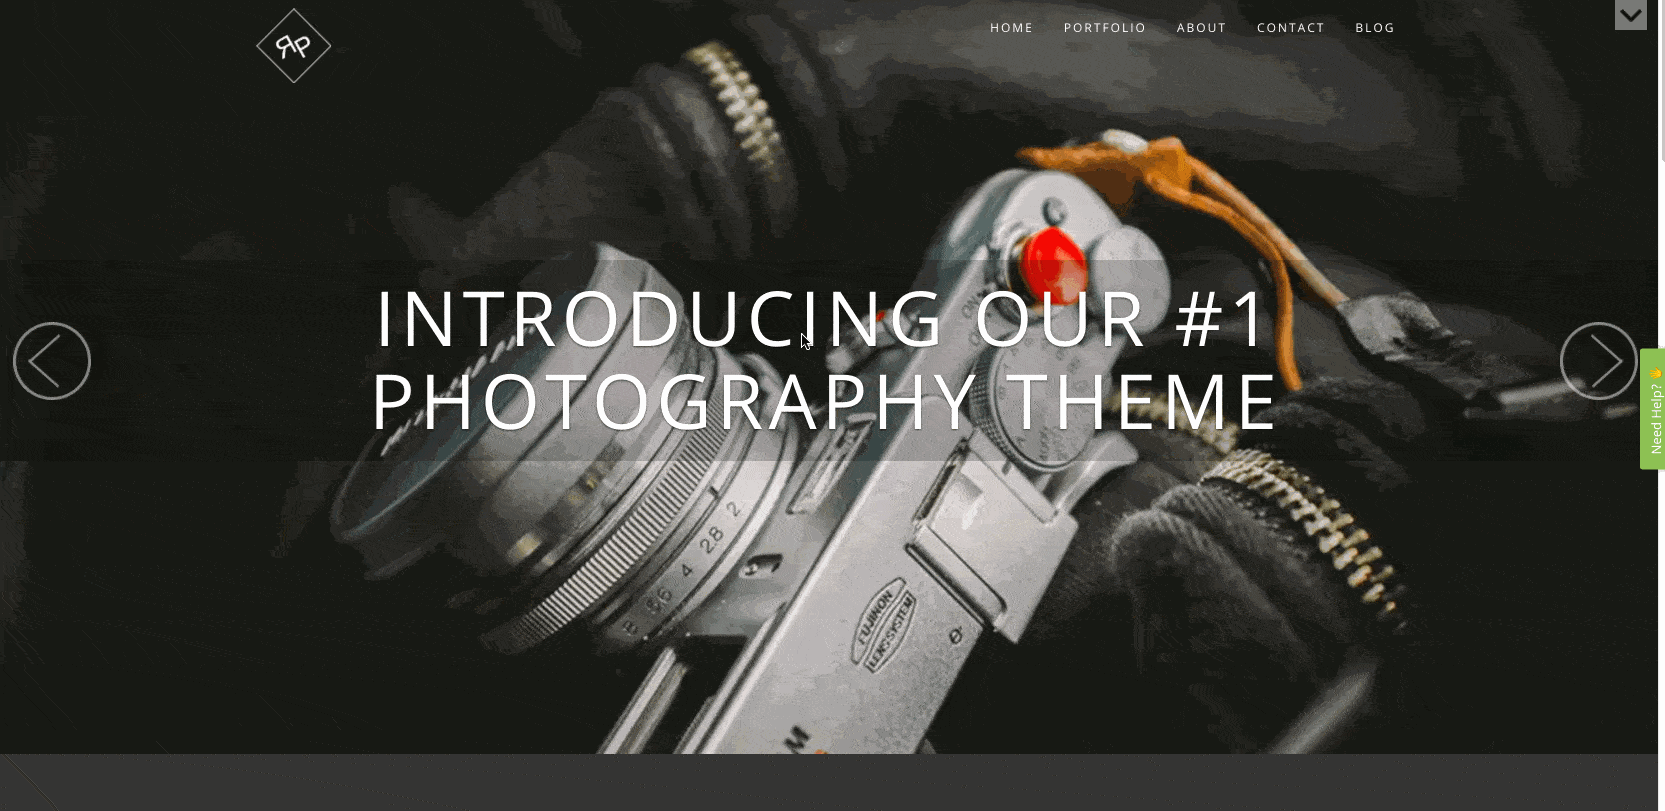 RokoPhoto est un thème WordPress pour photographe